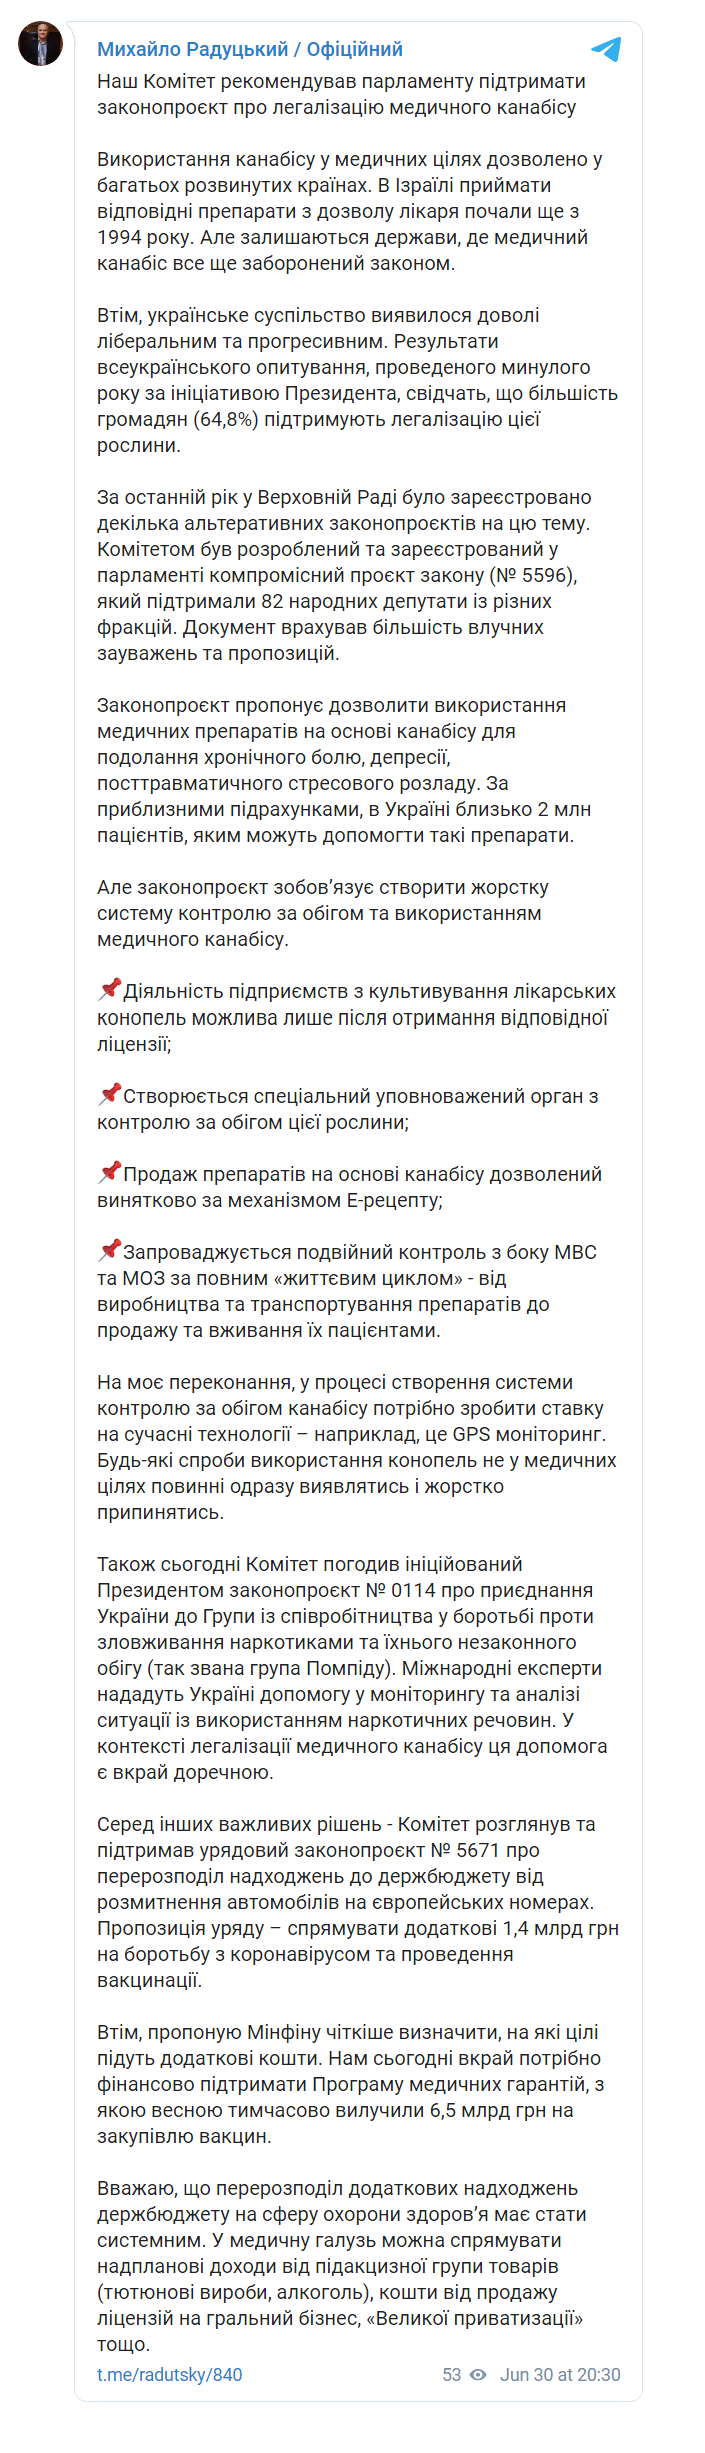 Скриншот из Телеграм Михаила Радуцкого